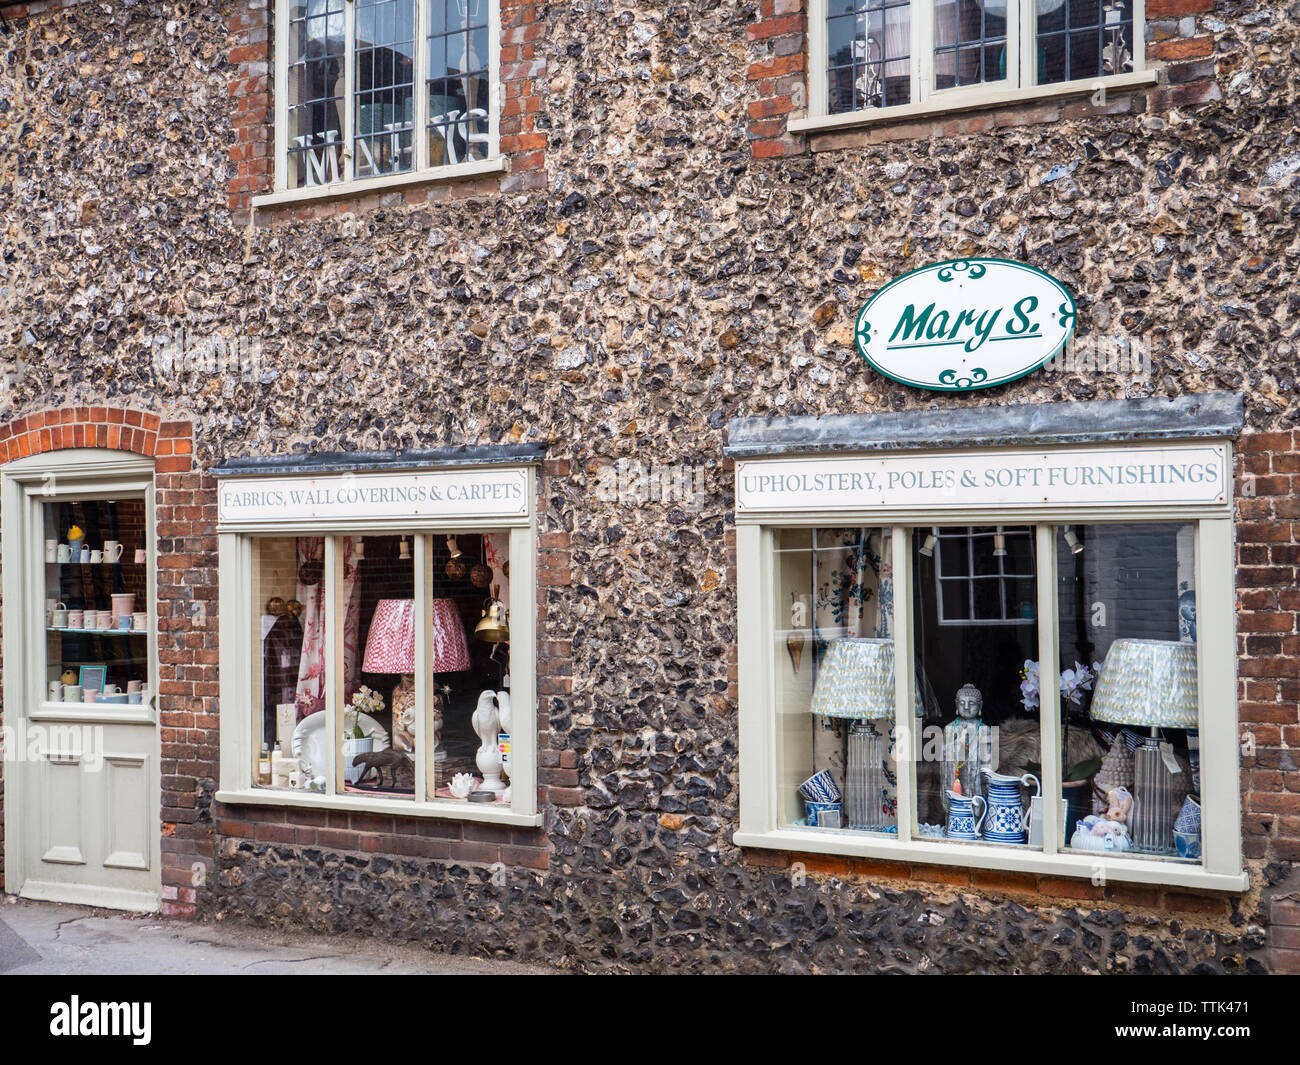 Marys Soft Furnishing Shop, Goring-on-Thames, Oxfordshire, England, UK, GB. Stock Photo